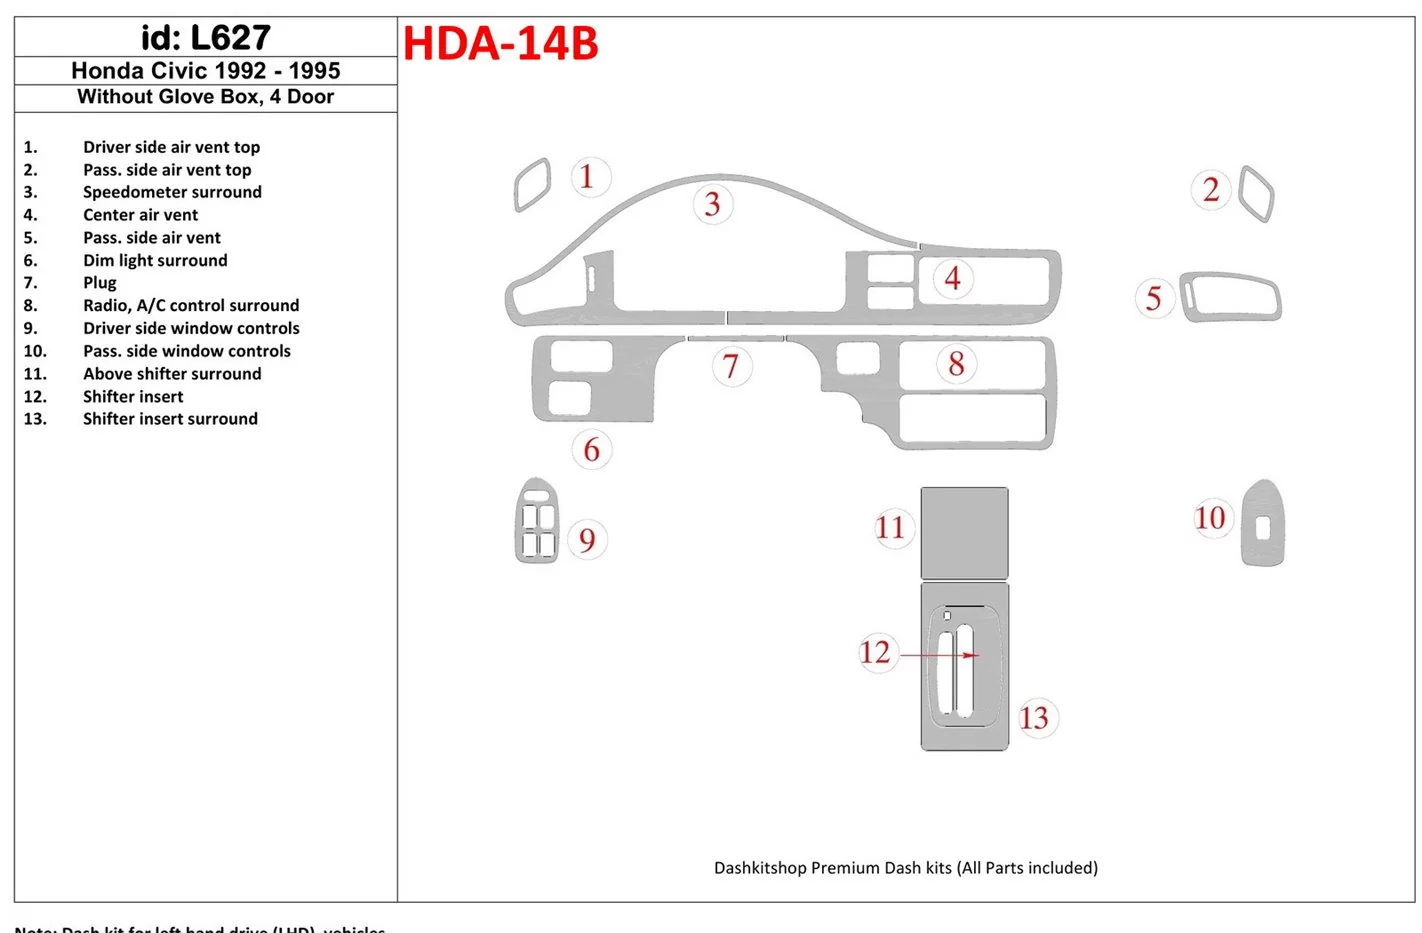 Honda Civic 1992-1995 2 Des portes, Sans lueur-boîte BD Kit la décoration du tableau de bord - 1 - habillage decor de tableau de